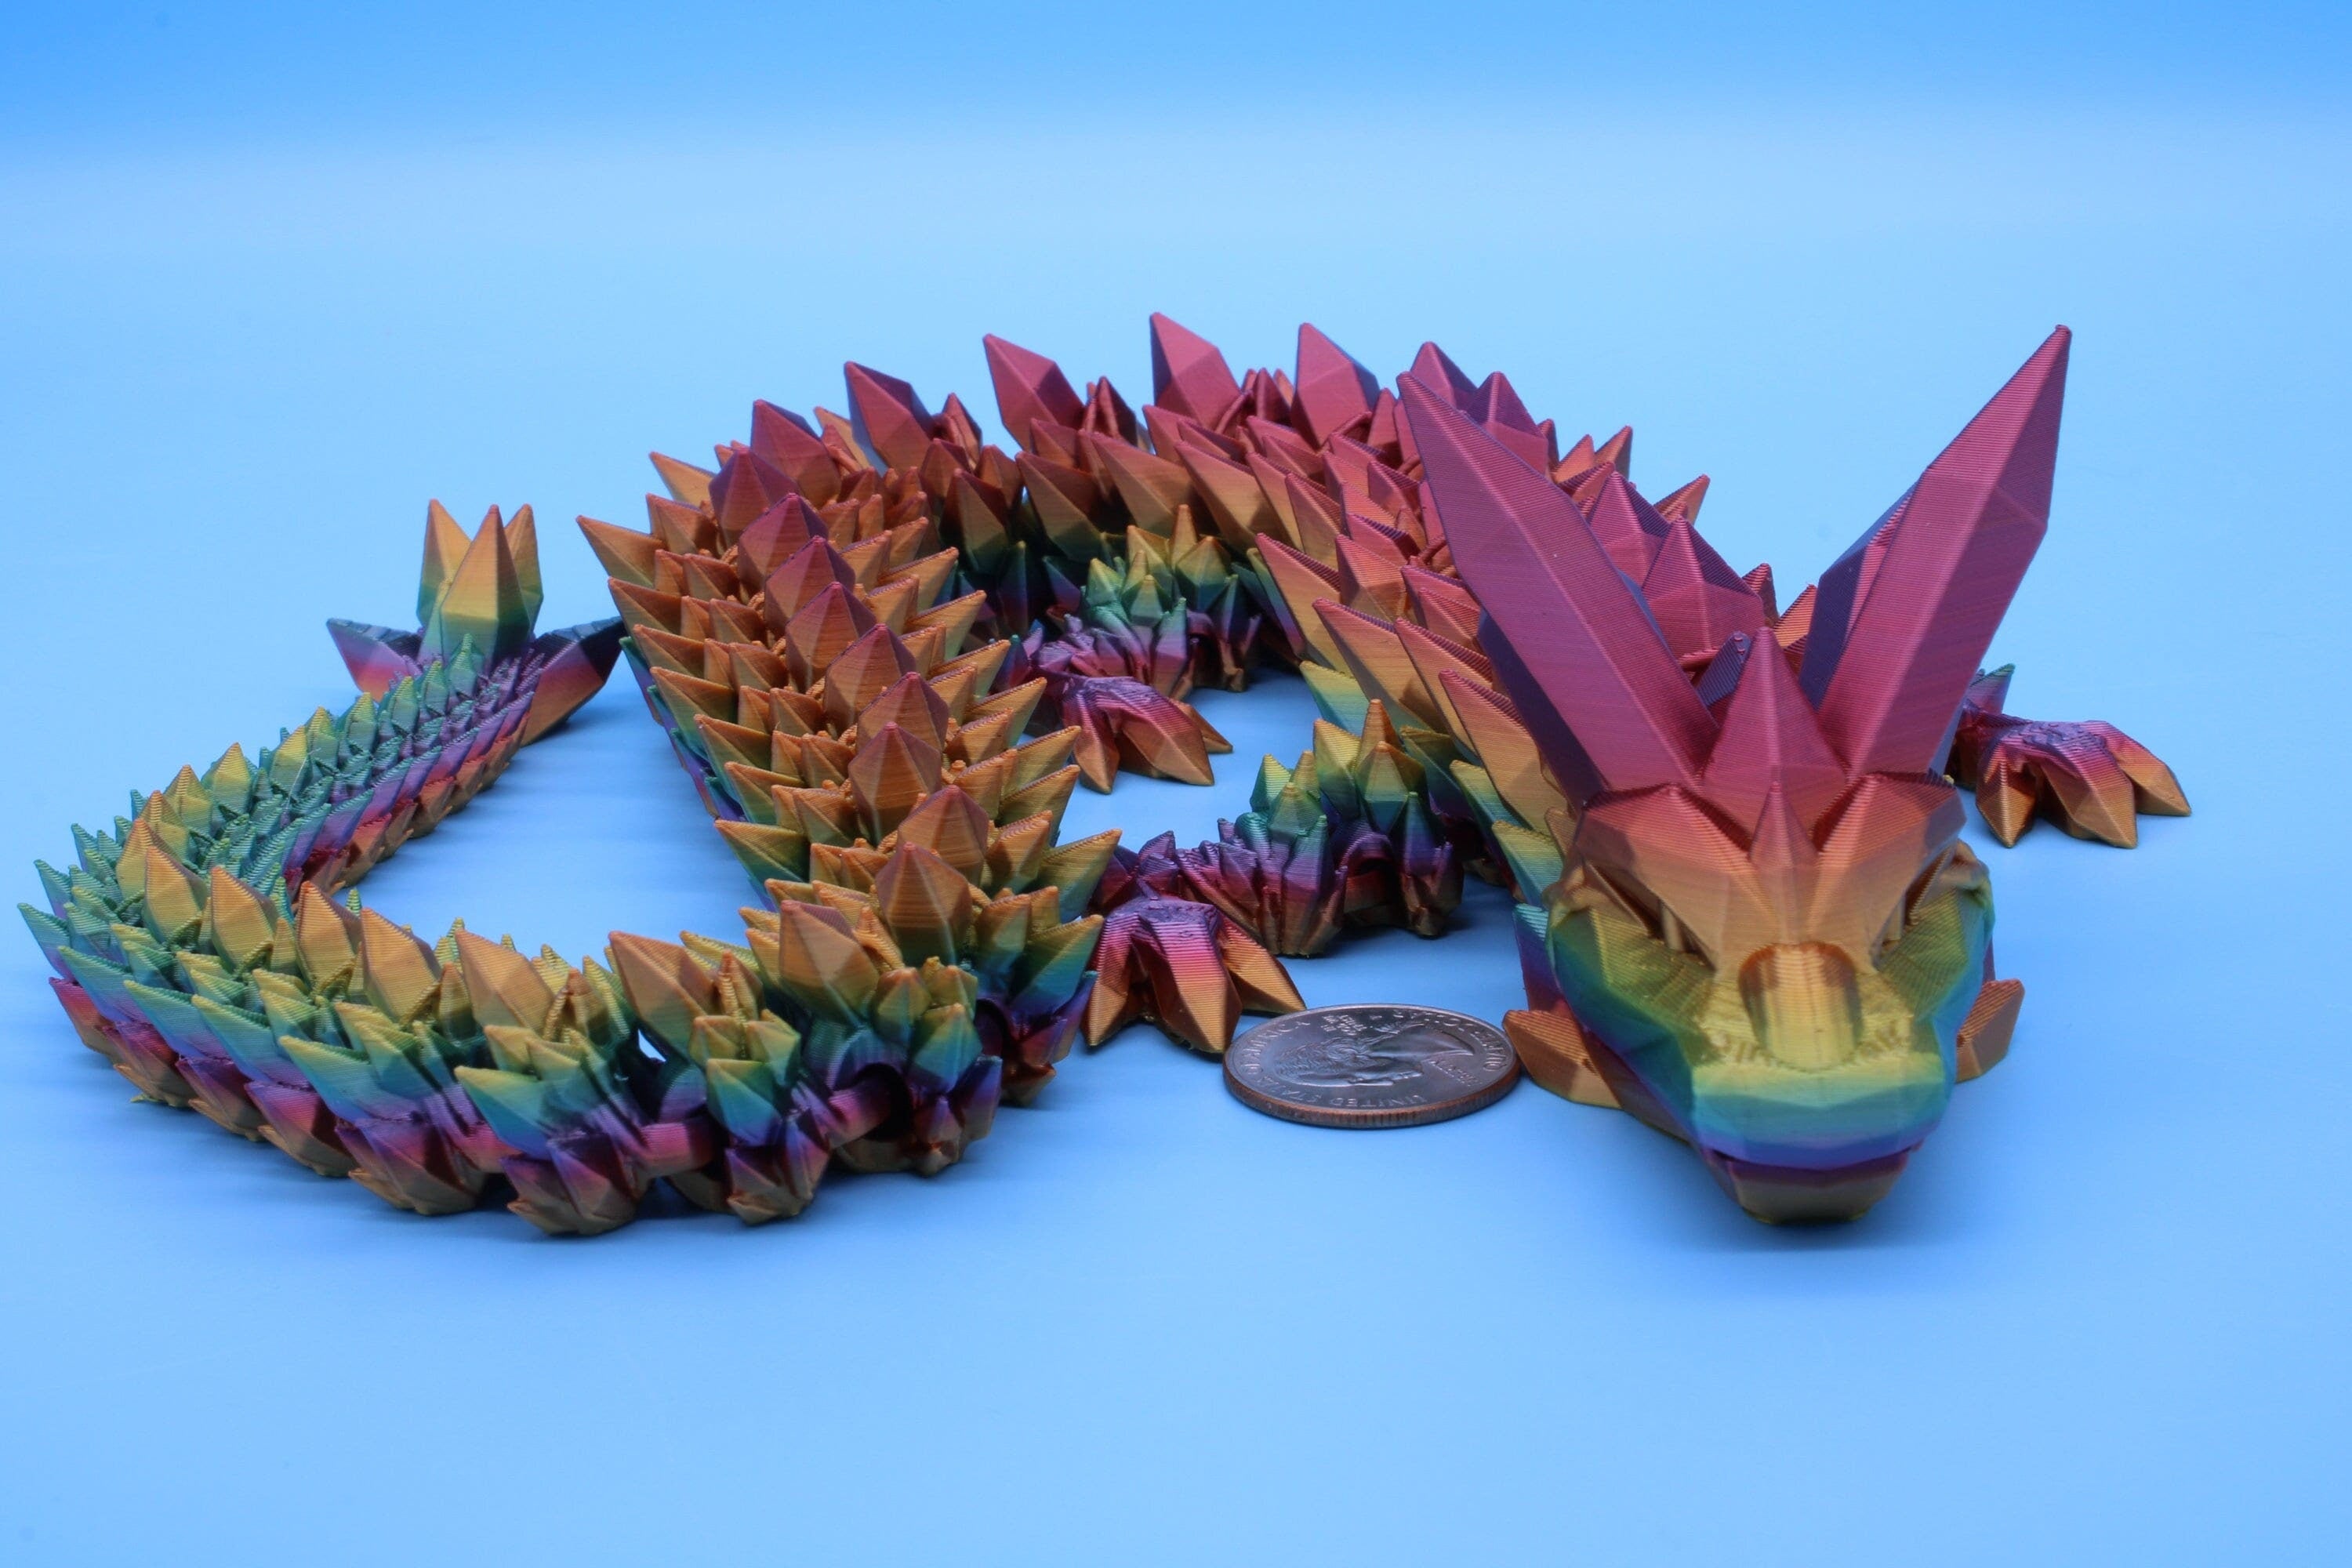 24 Inch Crystal Dragon, Articulated Dragon, Fidget Toy, Fidget